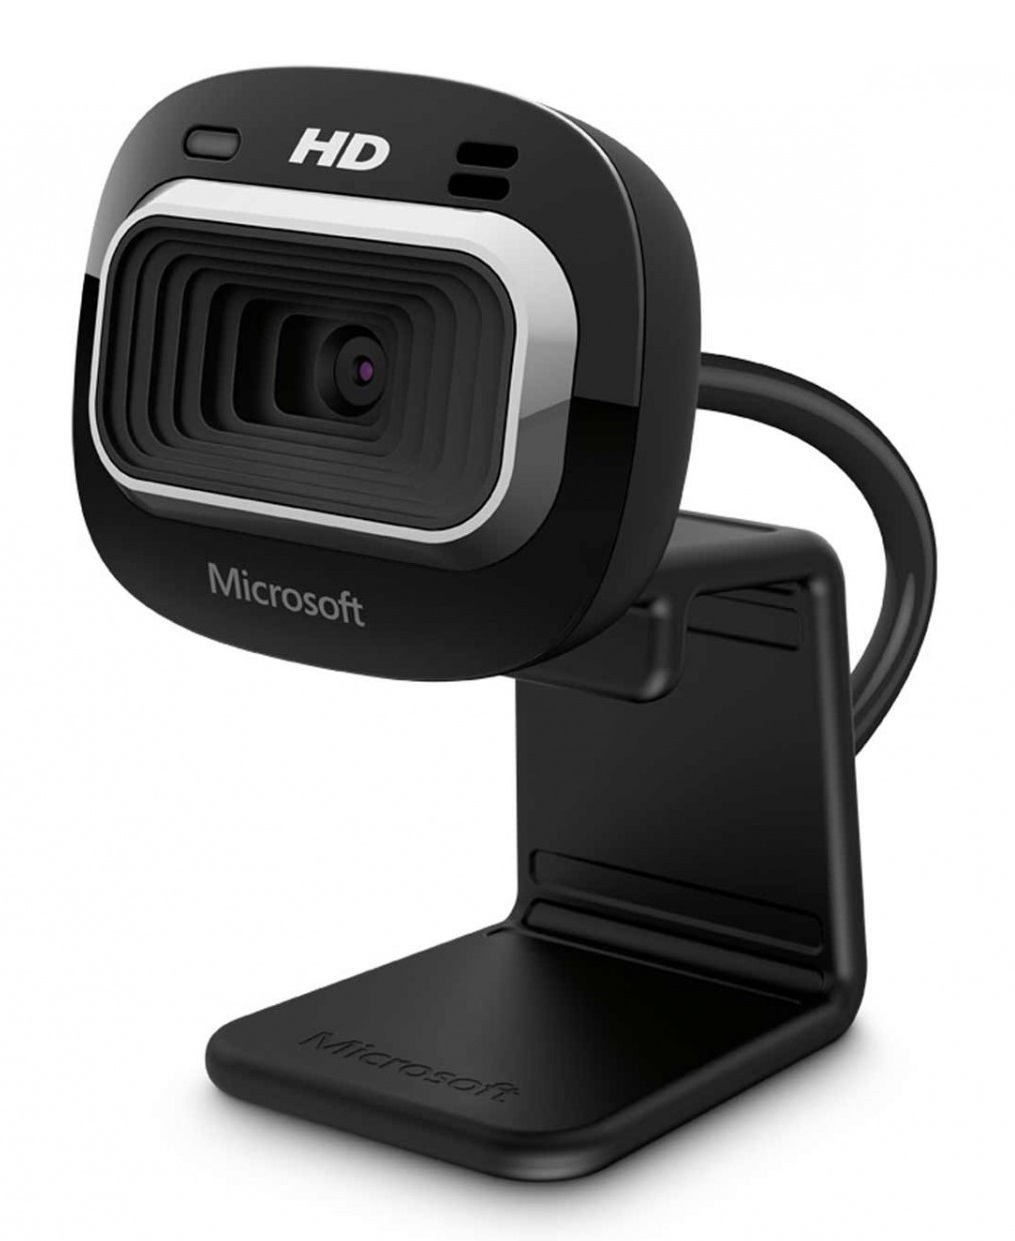 Camara Web LifeCam HD-3000 - Microsoft T3H-00011 | Camara para Video Conferencia certificada para Skype con función de grabación panorámica tipo cine, Resolución 720p HD Video Chat, 720p Grabacion de Video, Pantalla Ancha. Garantía de 3 Años